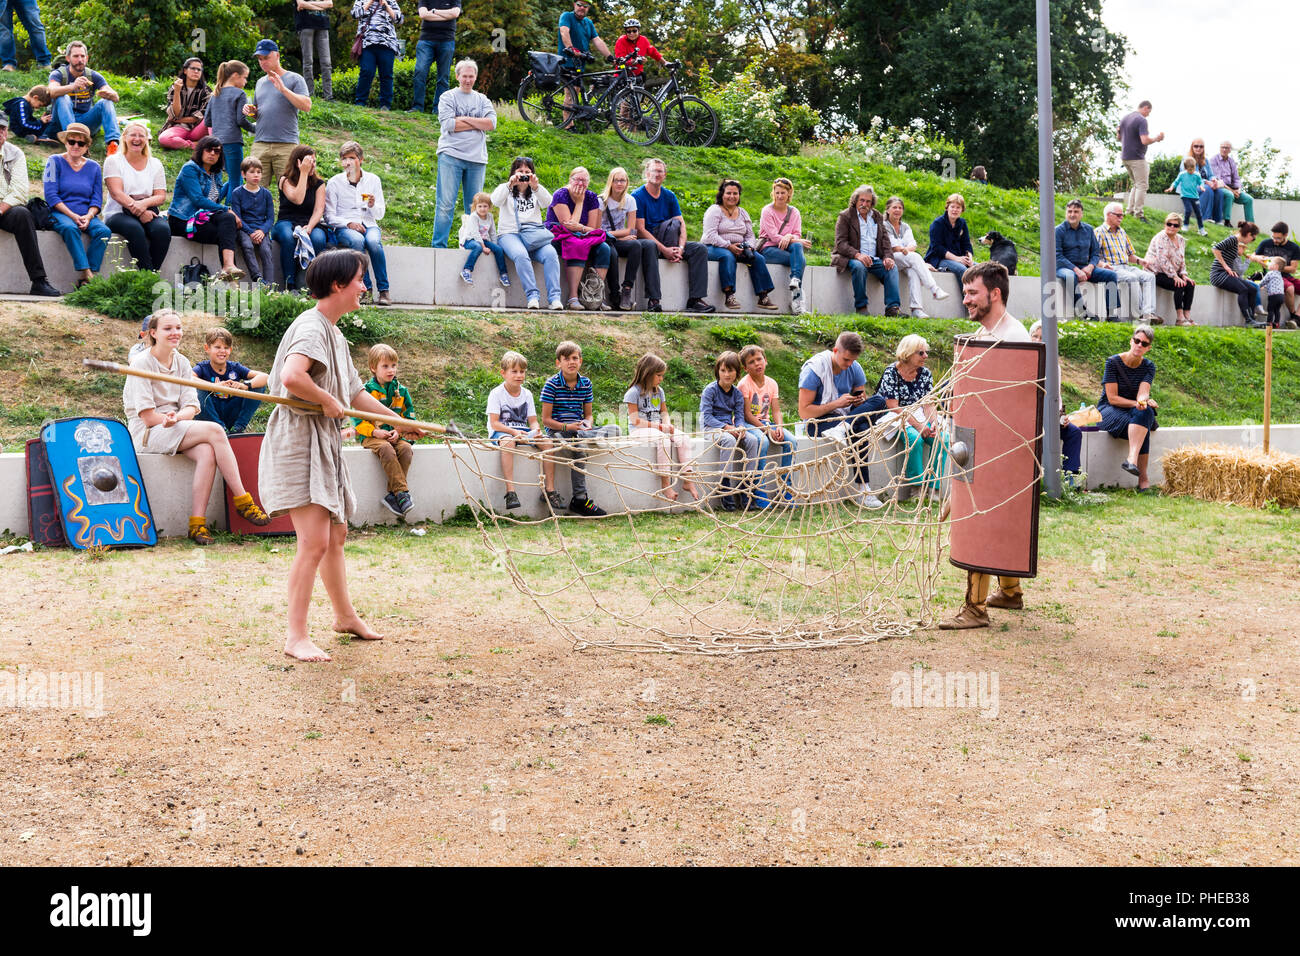 Gladiatoren Training - Römische re enactment in Zülpich - 26. August 2018 - Zülpich, Nordrhein-Westfalen, NRW, Deutschland, Europa Stockfoto